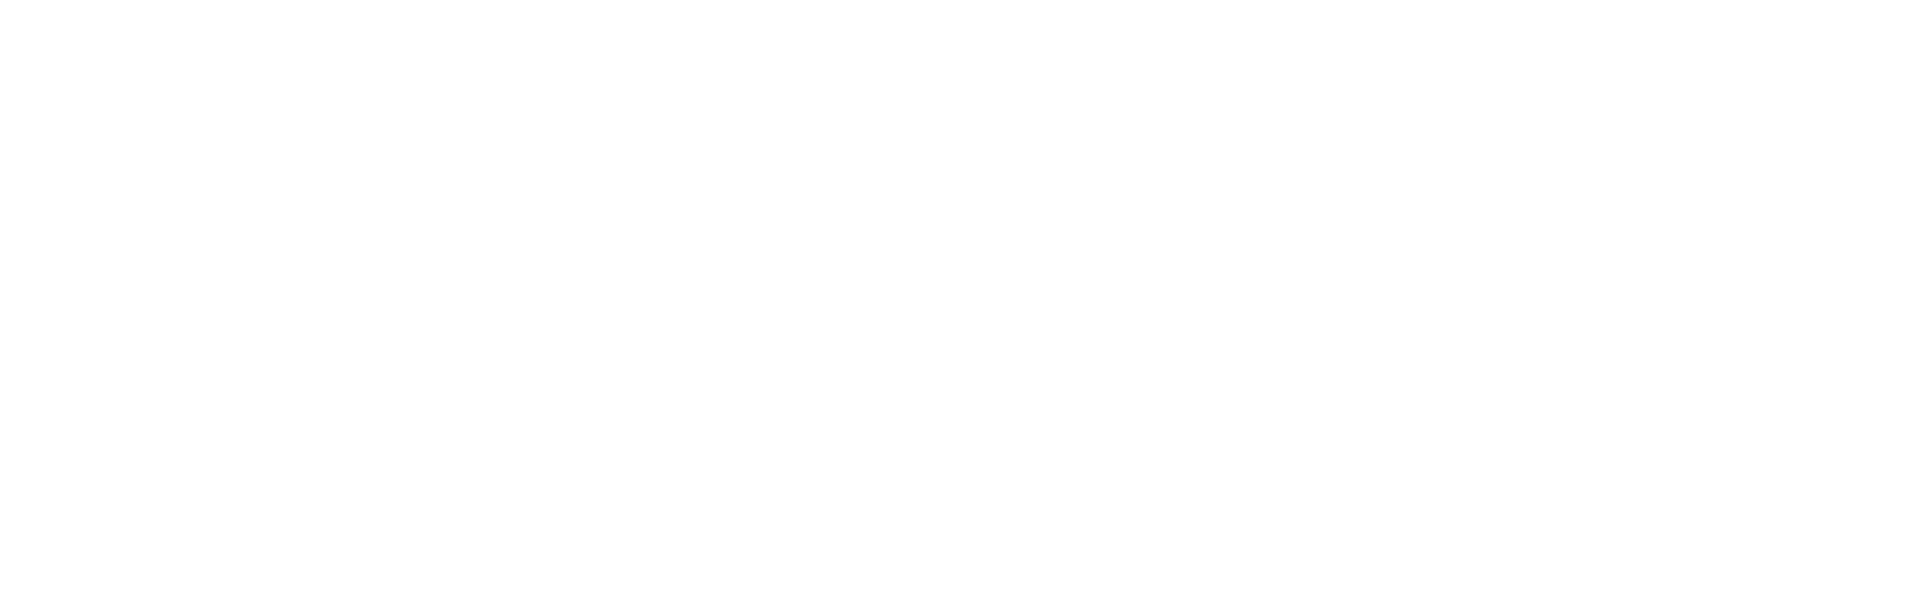 Exceptional Service 2024 - Inverse - Landscape.png